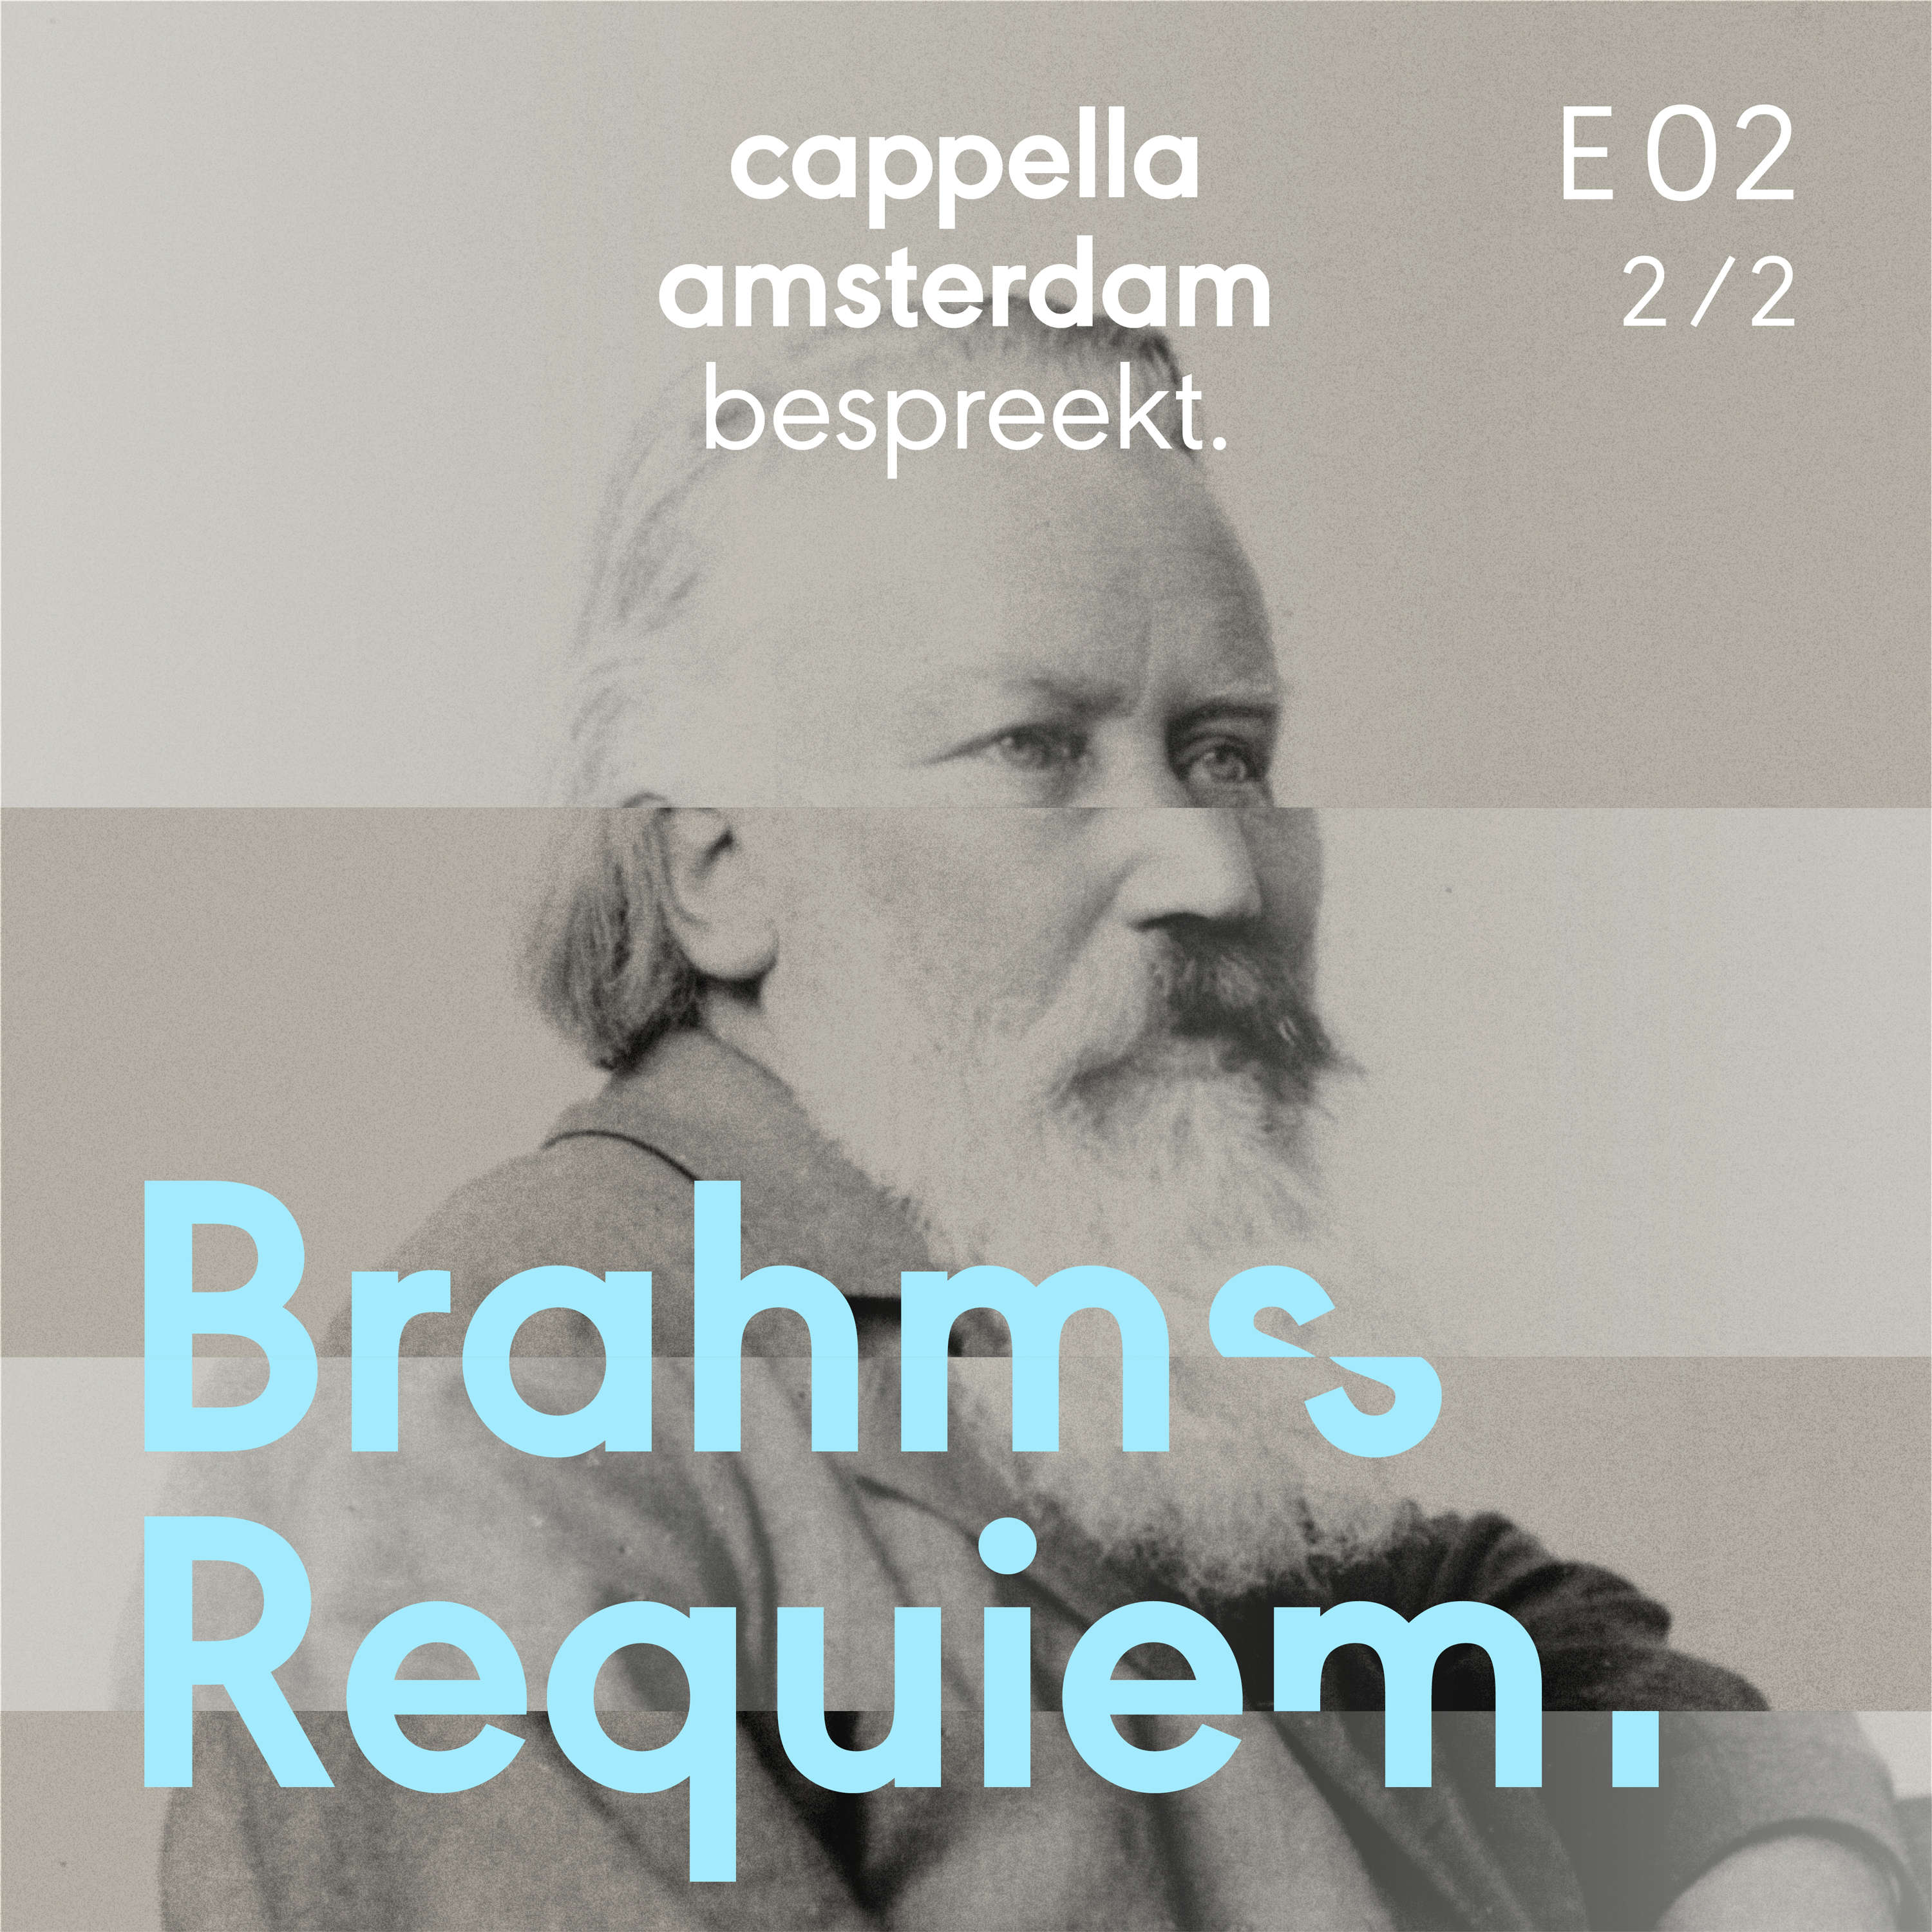 Brahms' Ein deutsches Requiem Ep. 2